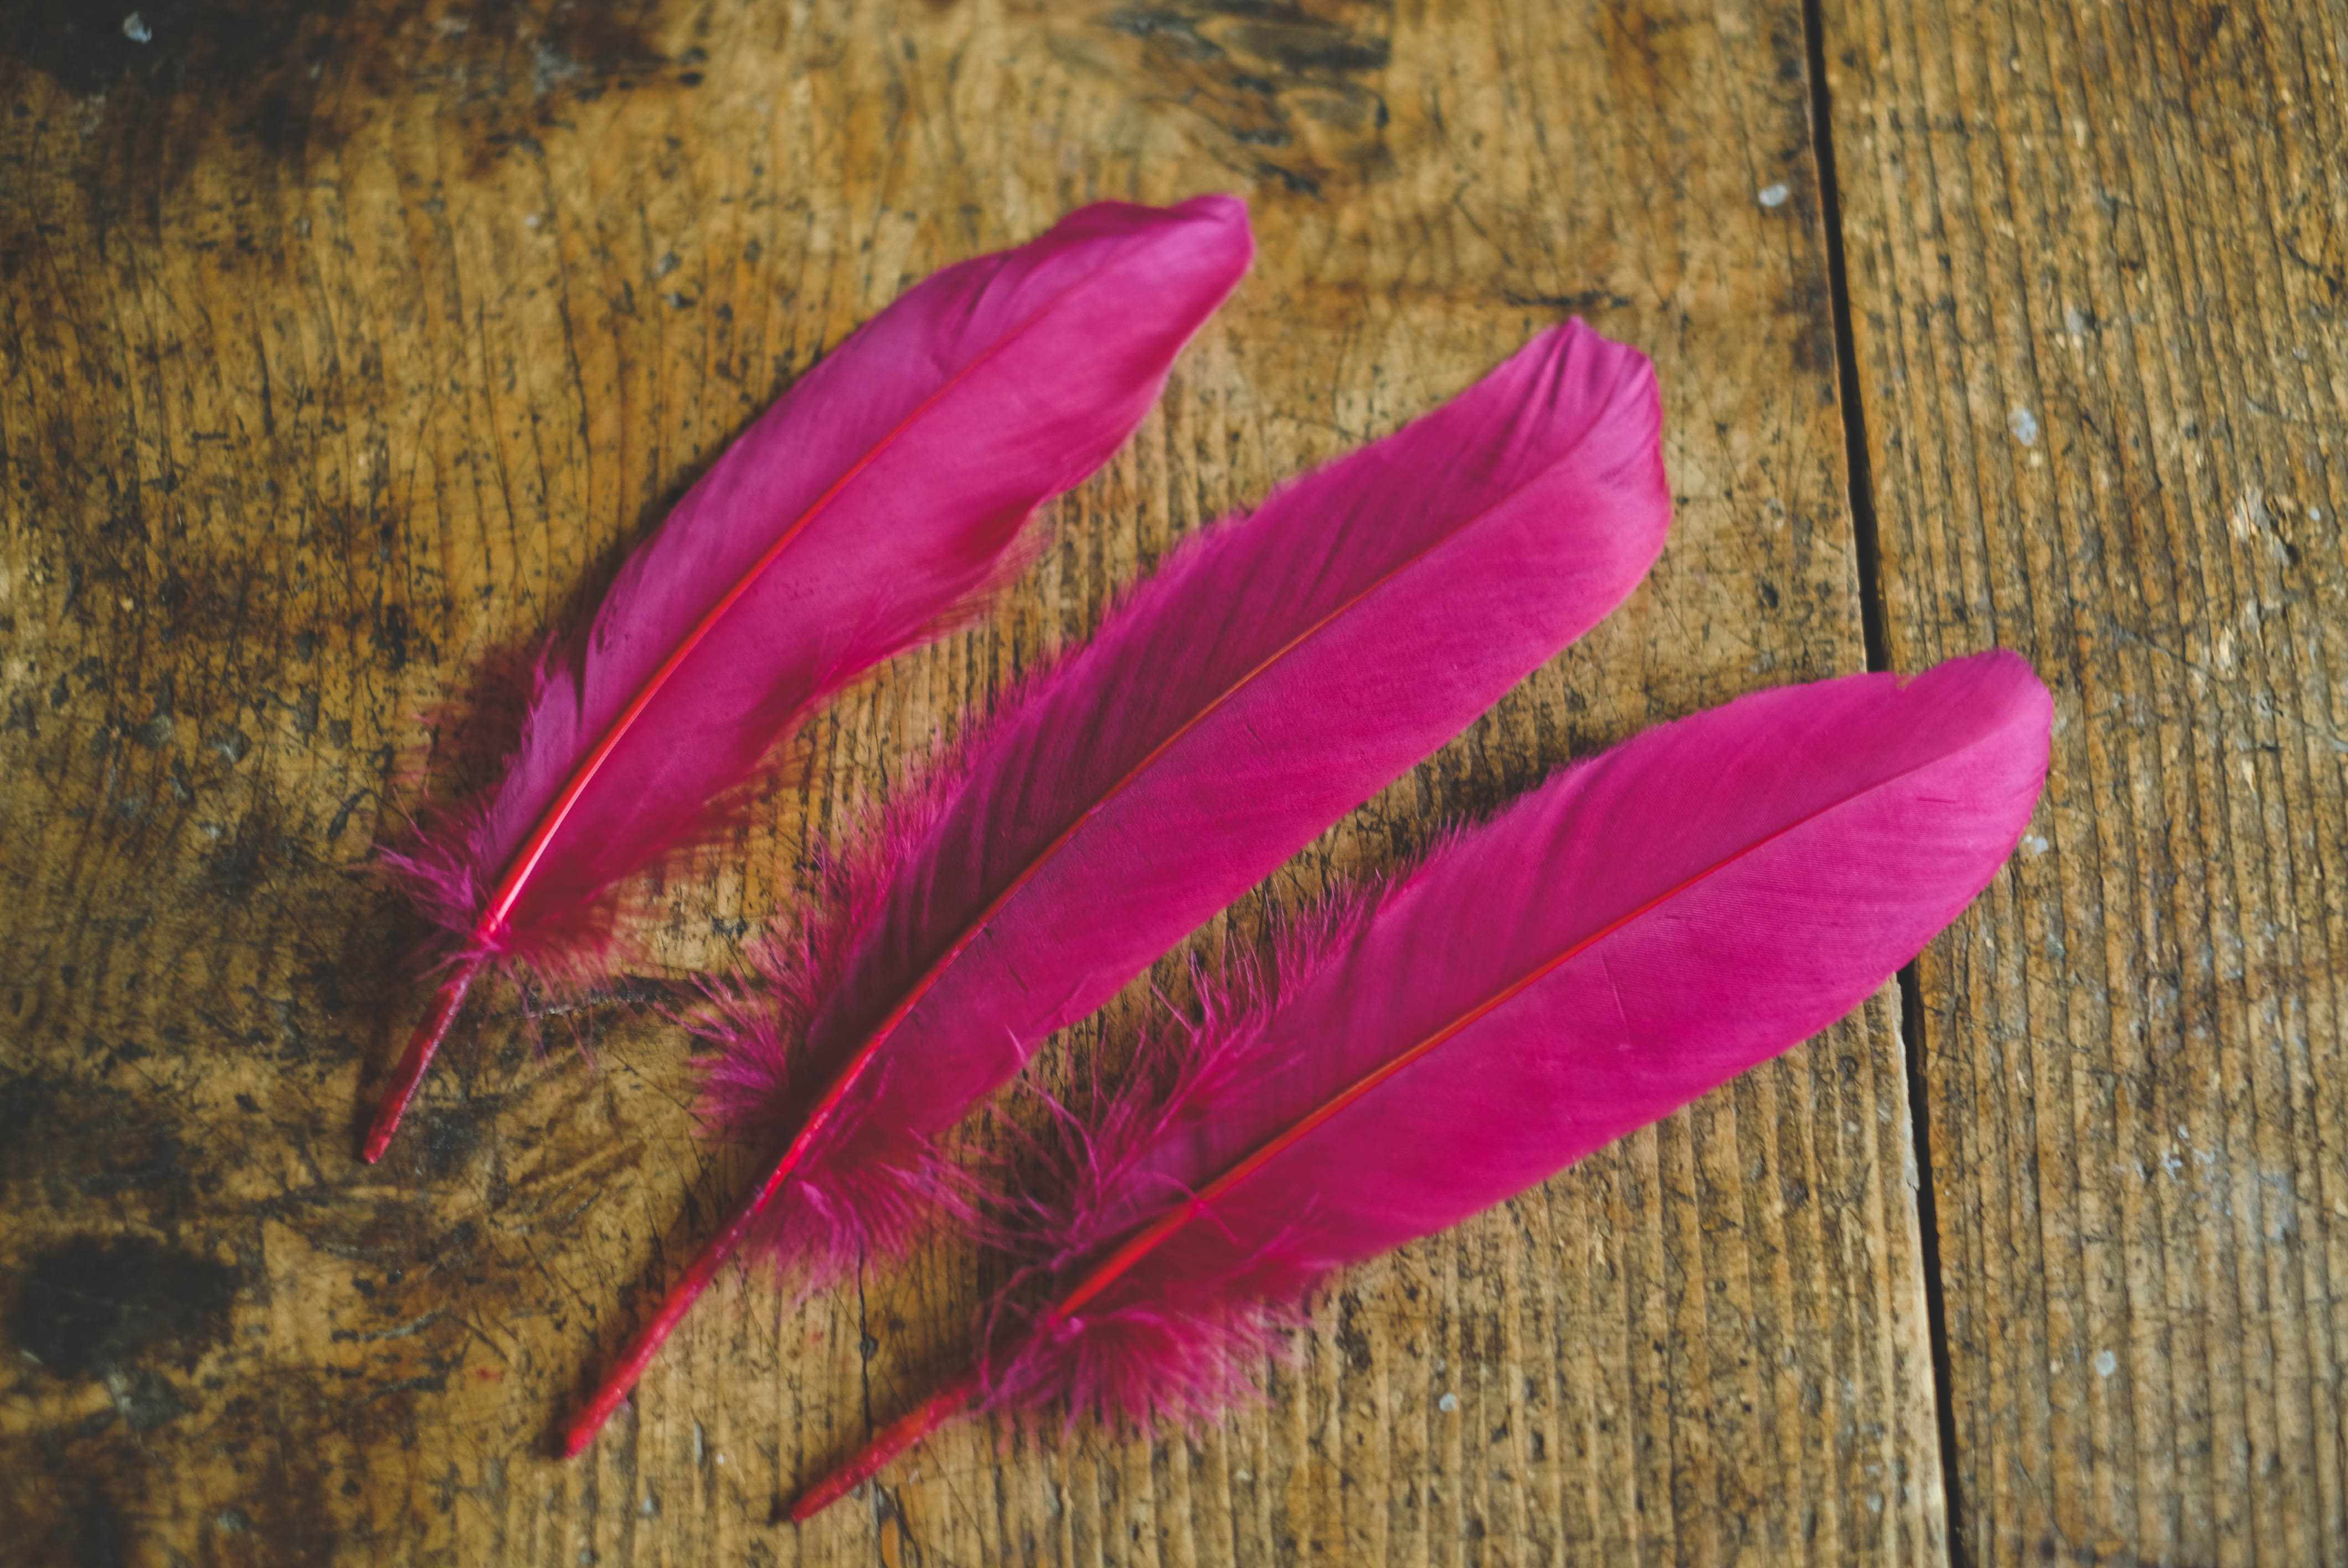 Dark pink goose feather 15-20cm